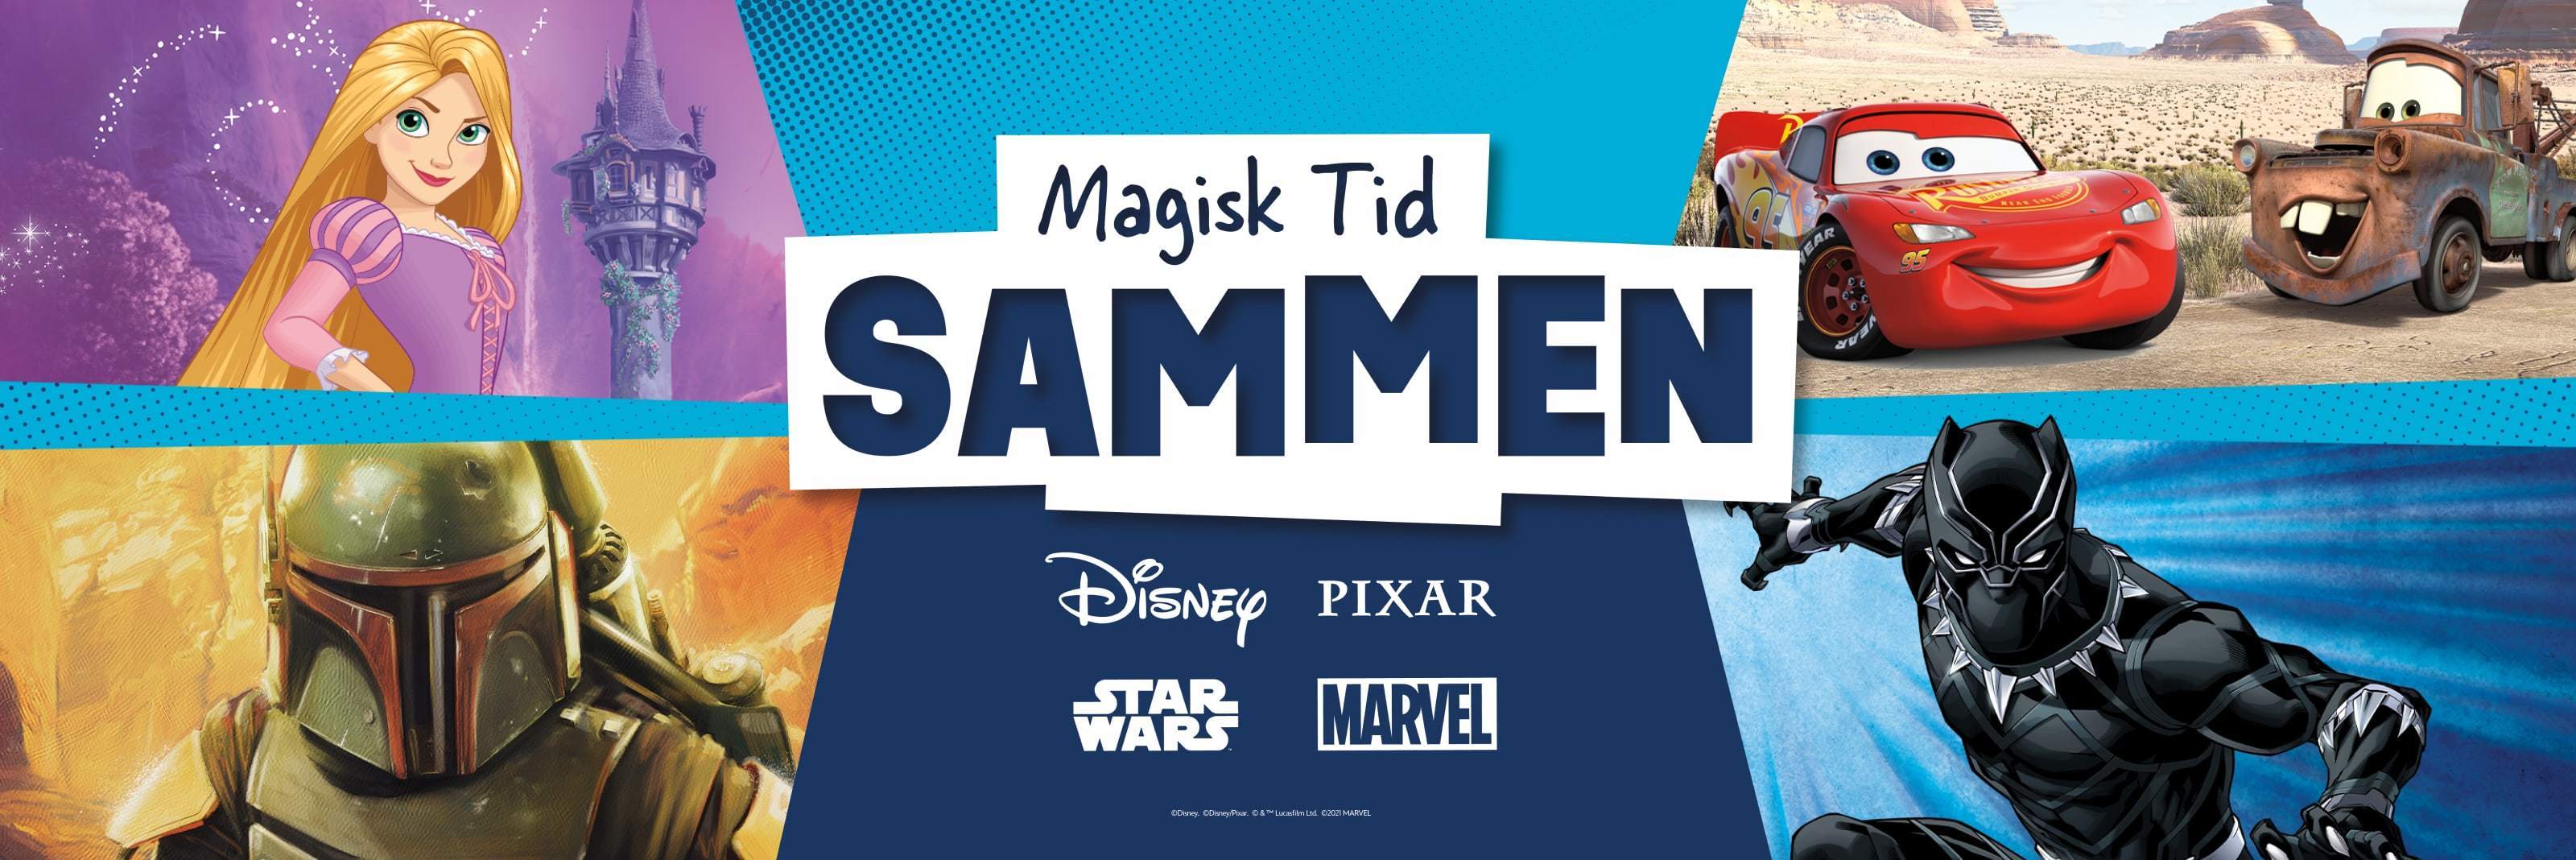 Disney-, Pixar-, Star Wars- og Marvel-karakterer foran en blå bakgrunn med merkelogoer i midten